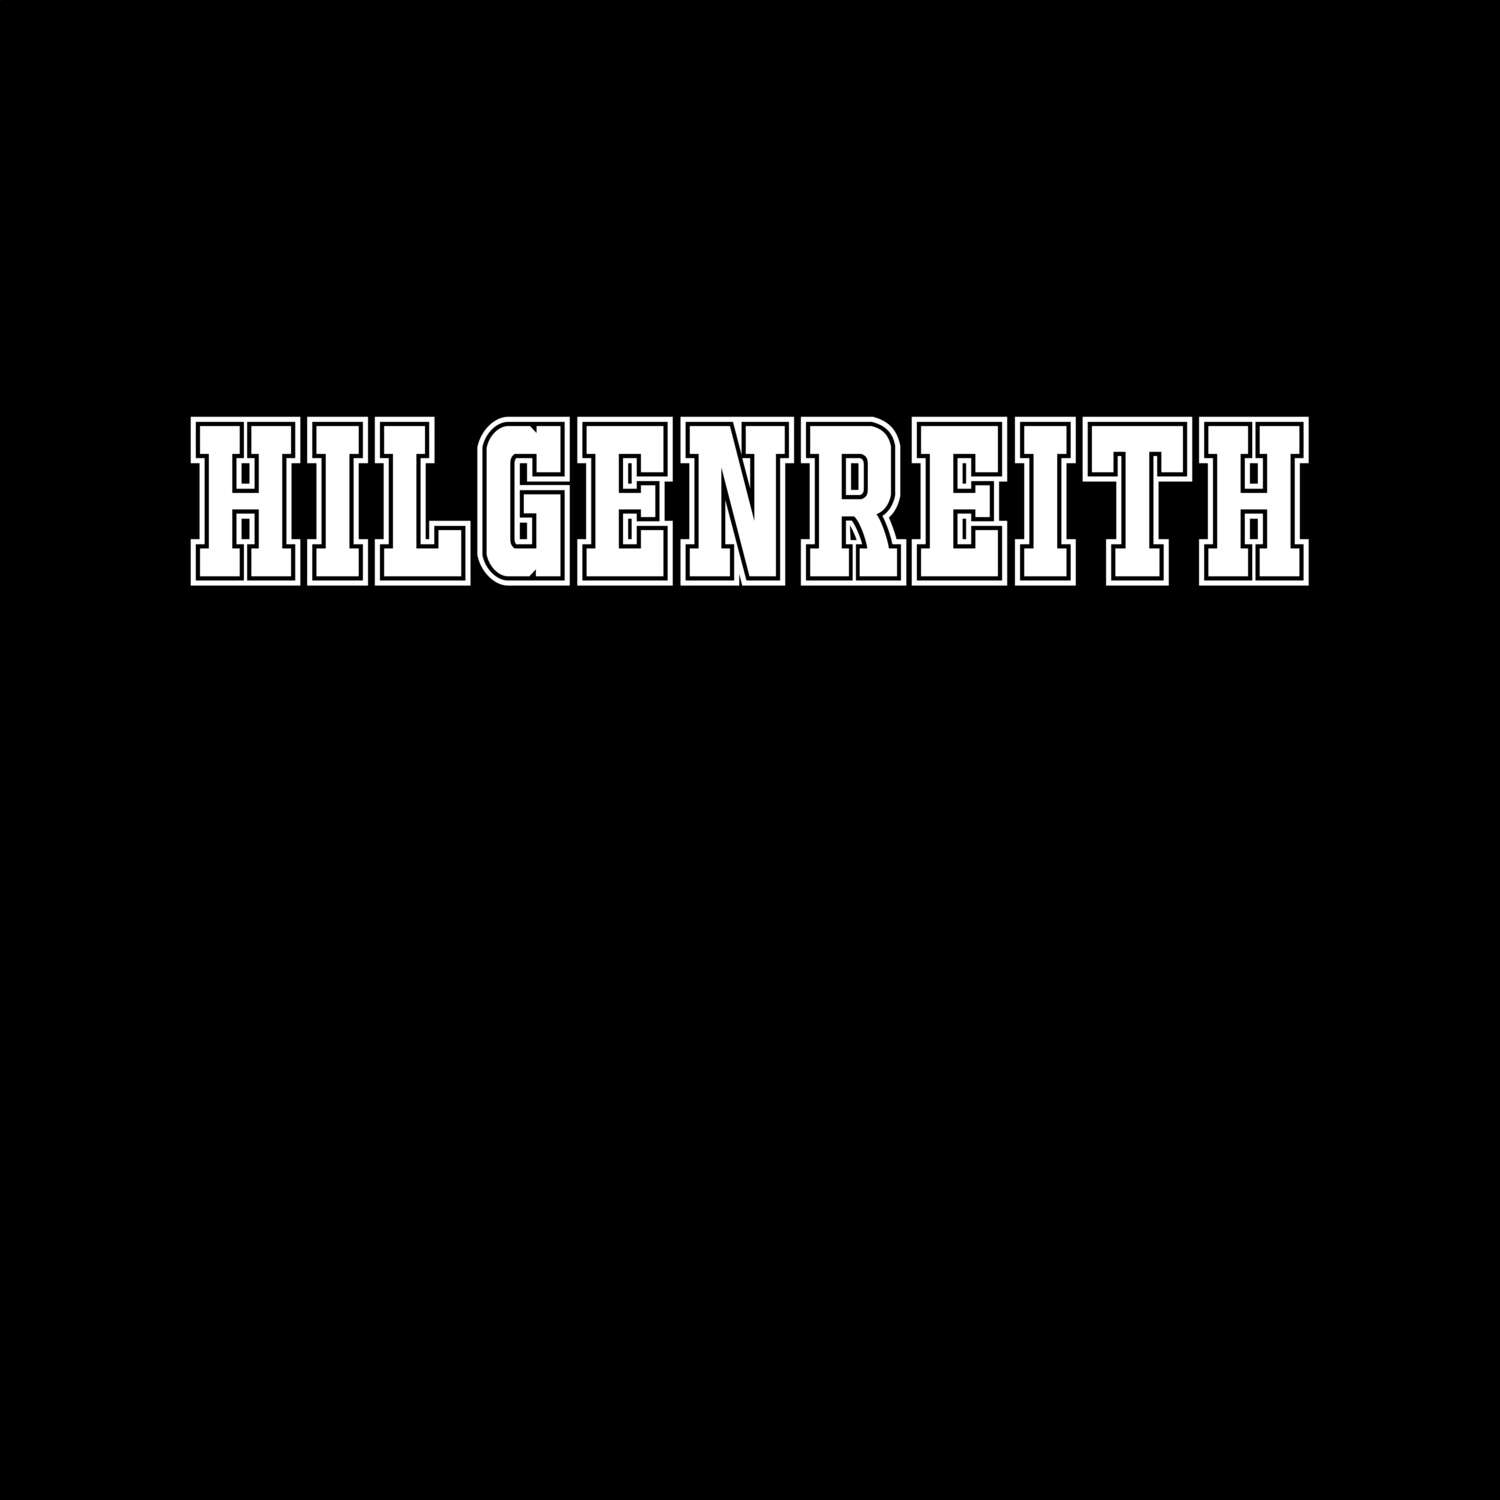 Hilgenreith T-Shirt »Classic«